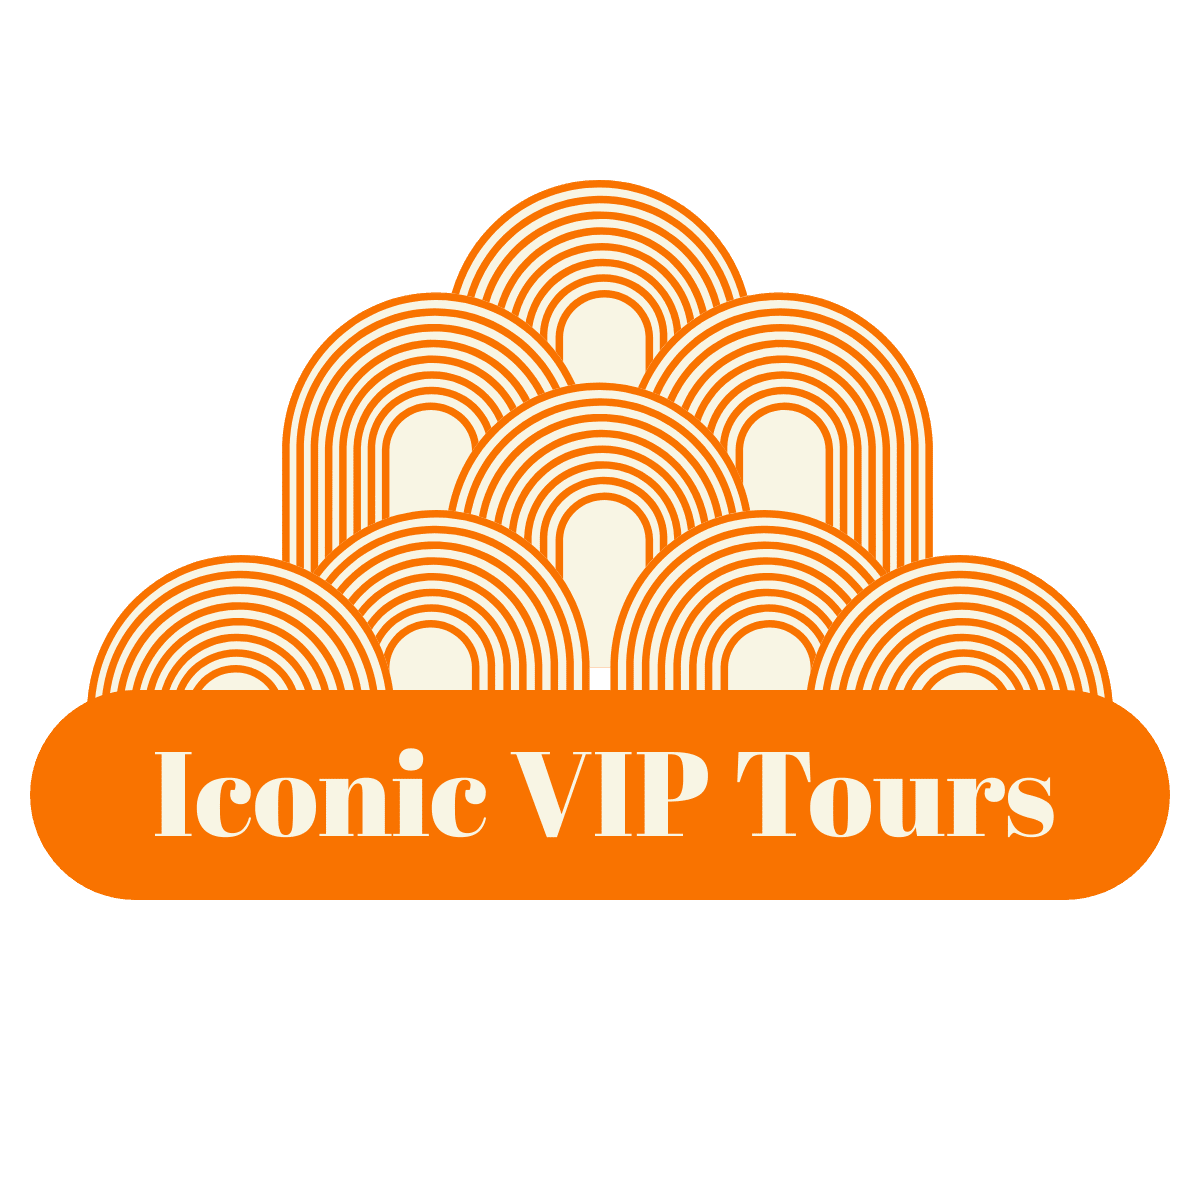 Iconic VIP Tours